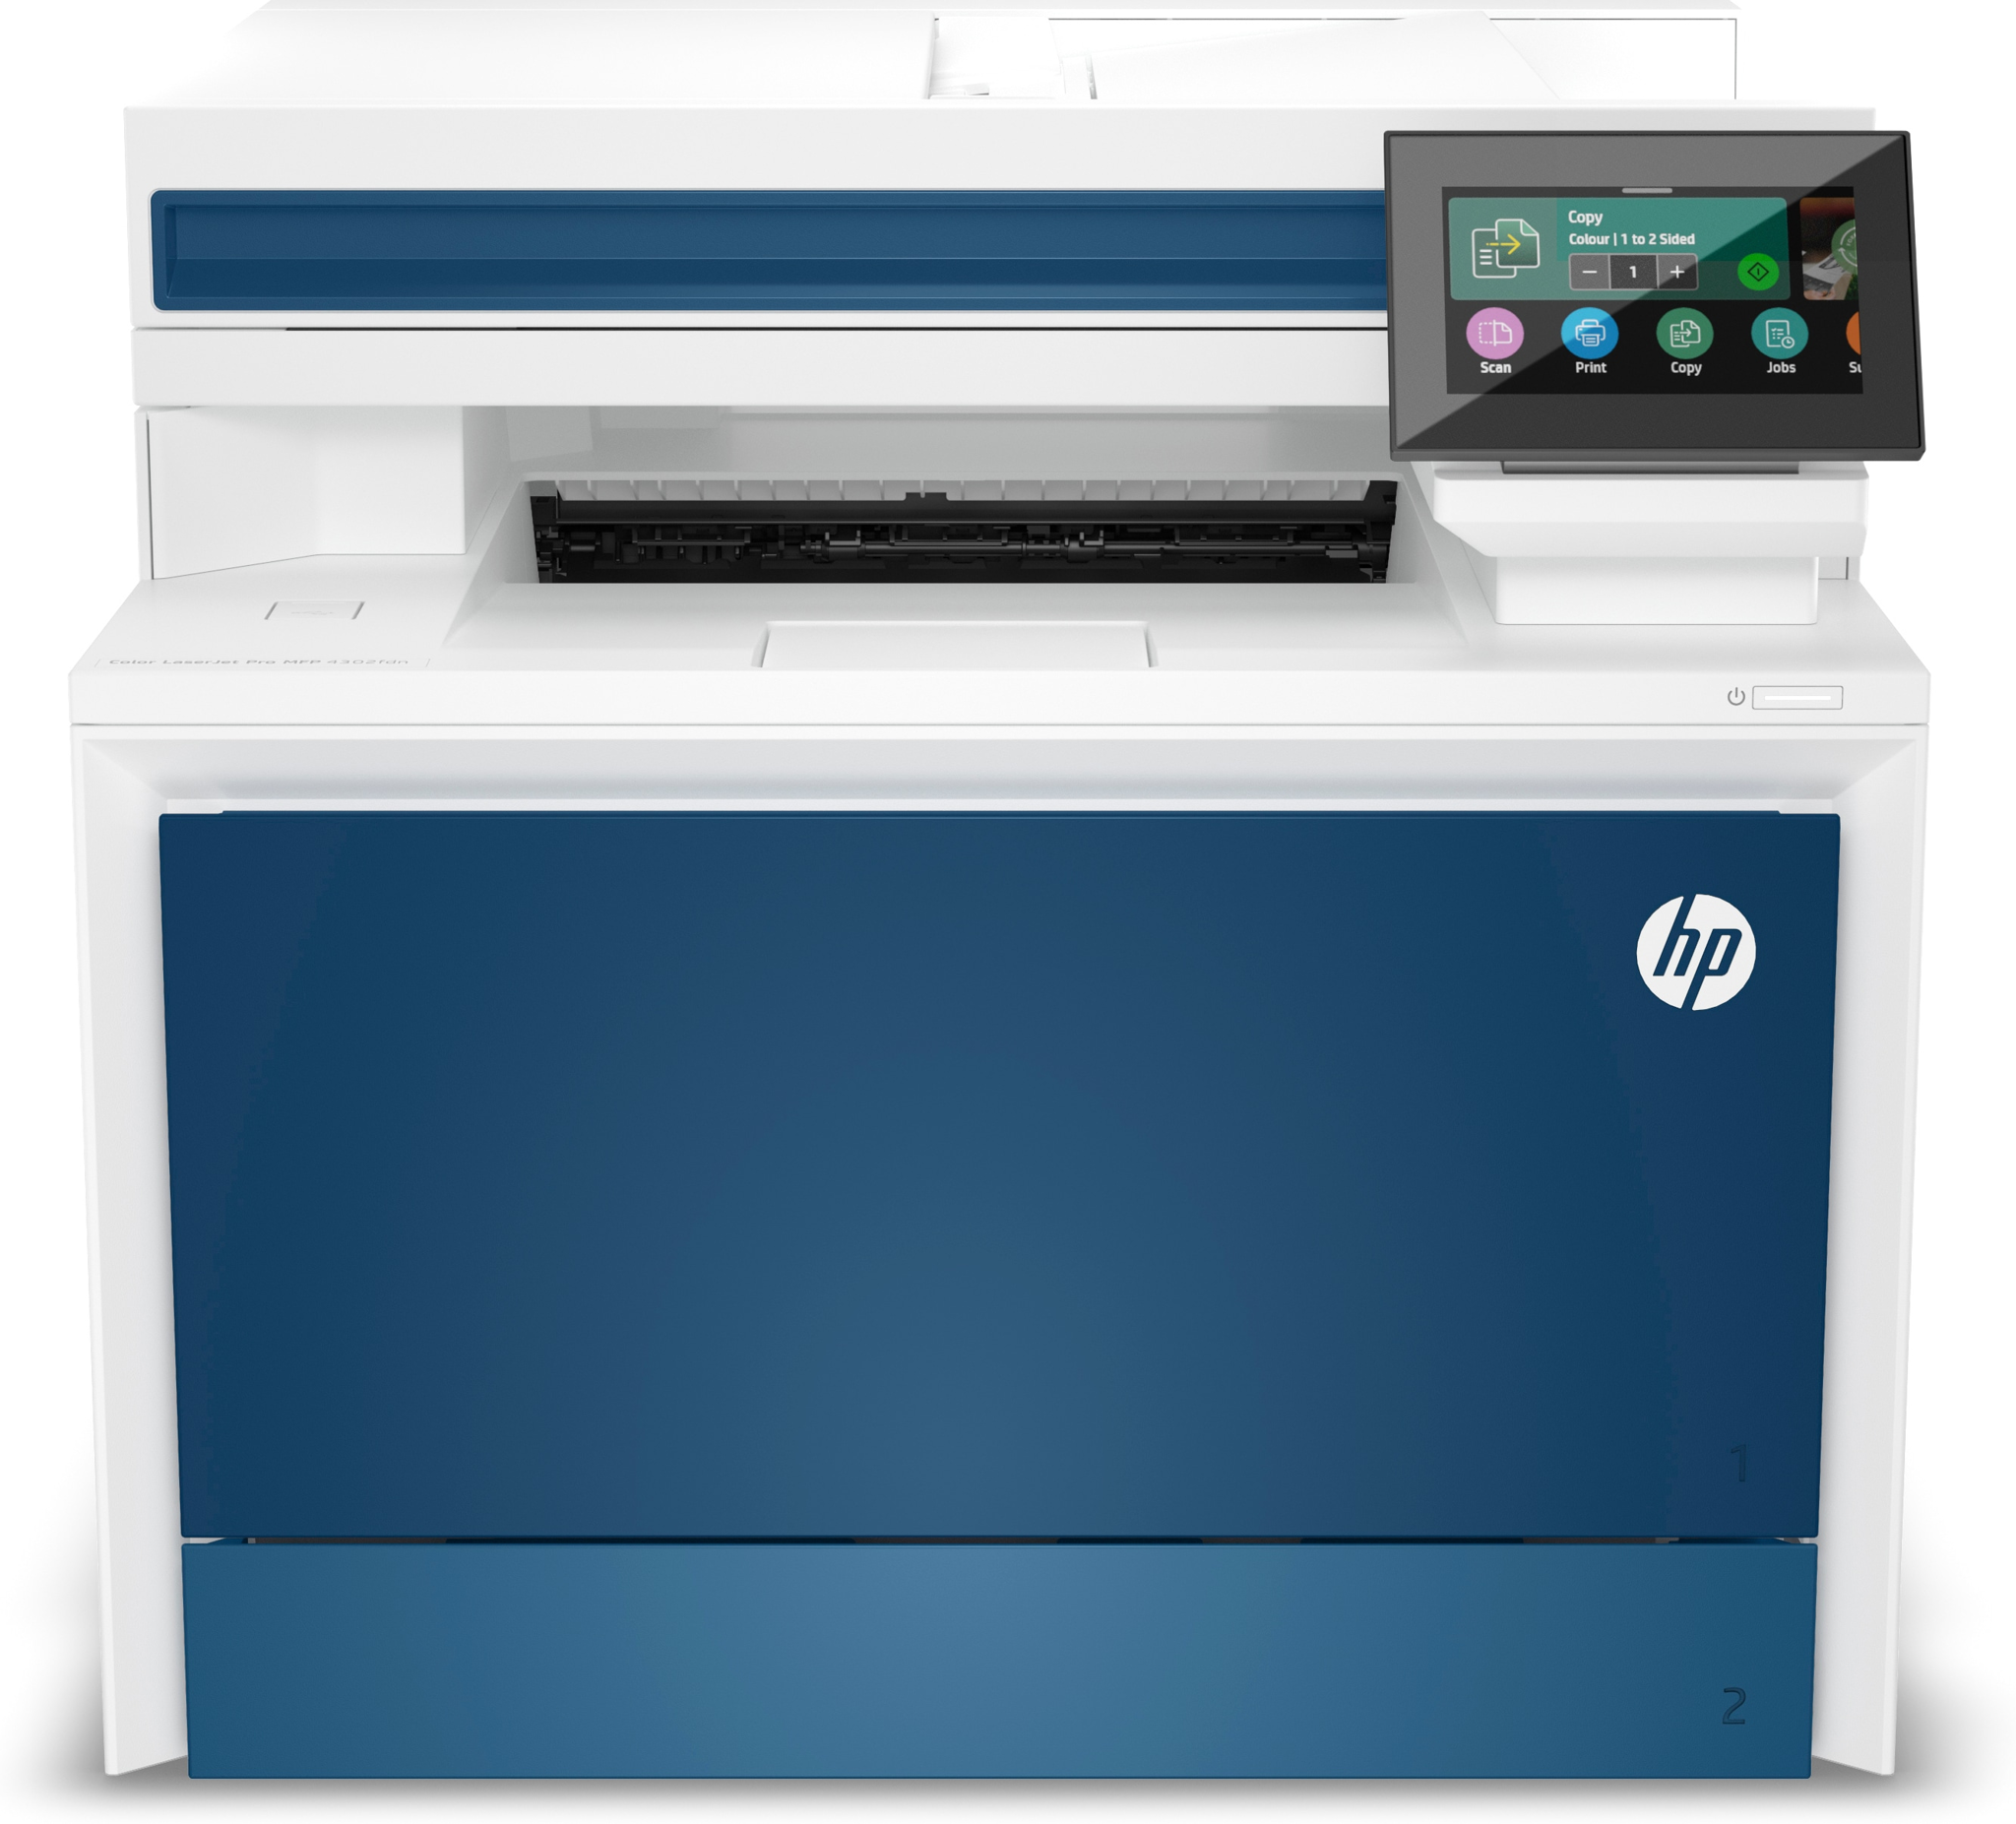 Bild von HP Color LaserJet Pro MFP 4302fdn Drucker - Farbe - Drucker für Kleine und mittlere Unternehmen - Drucken - Kopieren - Scannen - Faxen - Drucken vom Smartphone oder Tablet; Automatischer Vorlageneinzug; Beidseitiges Drucken - Laser - Farbdruck - 600 x 600 DP